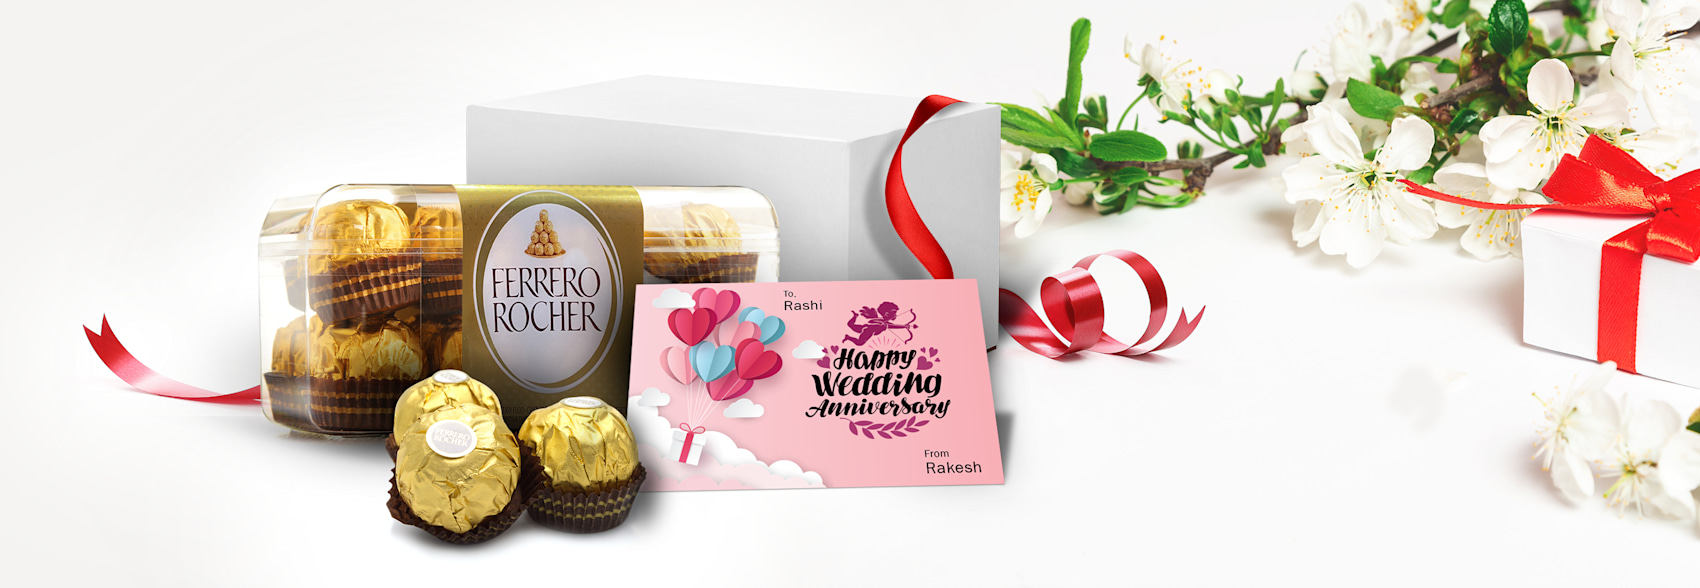 Ferrero Rocher Chocolates > Hero img2